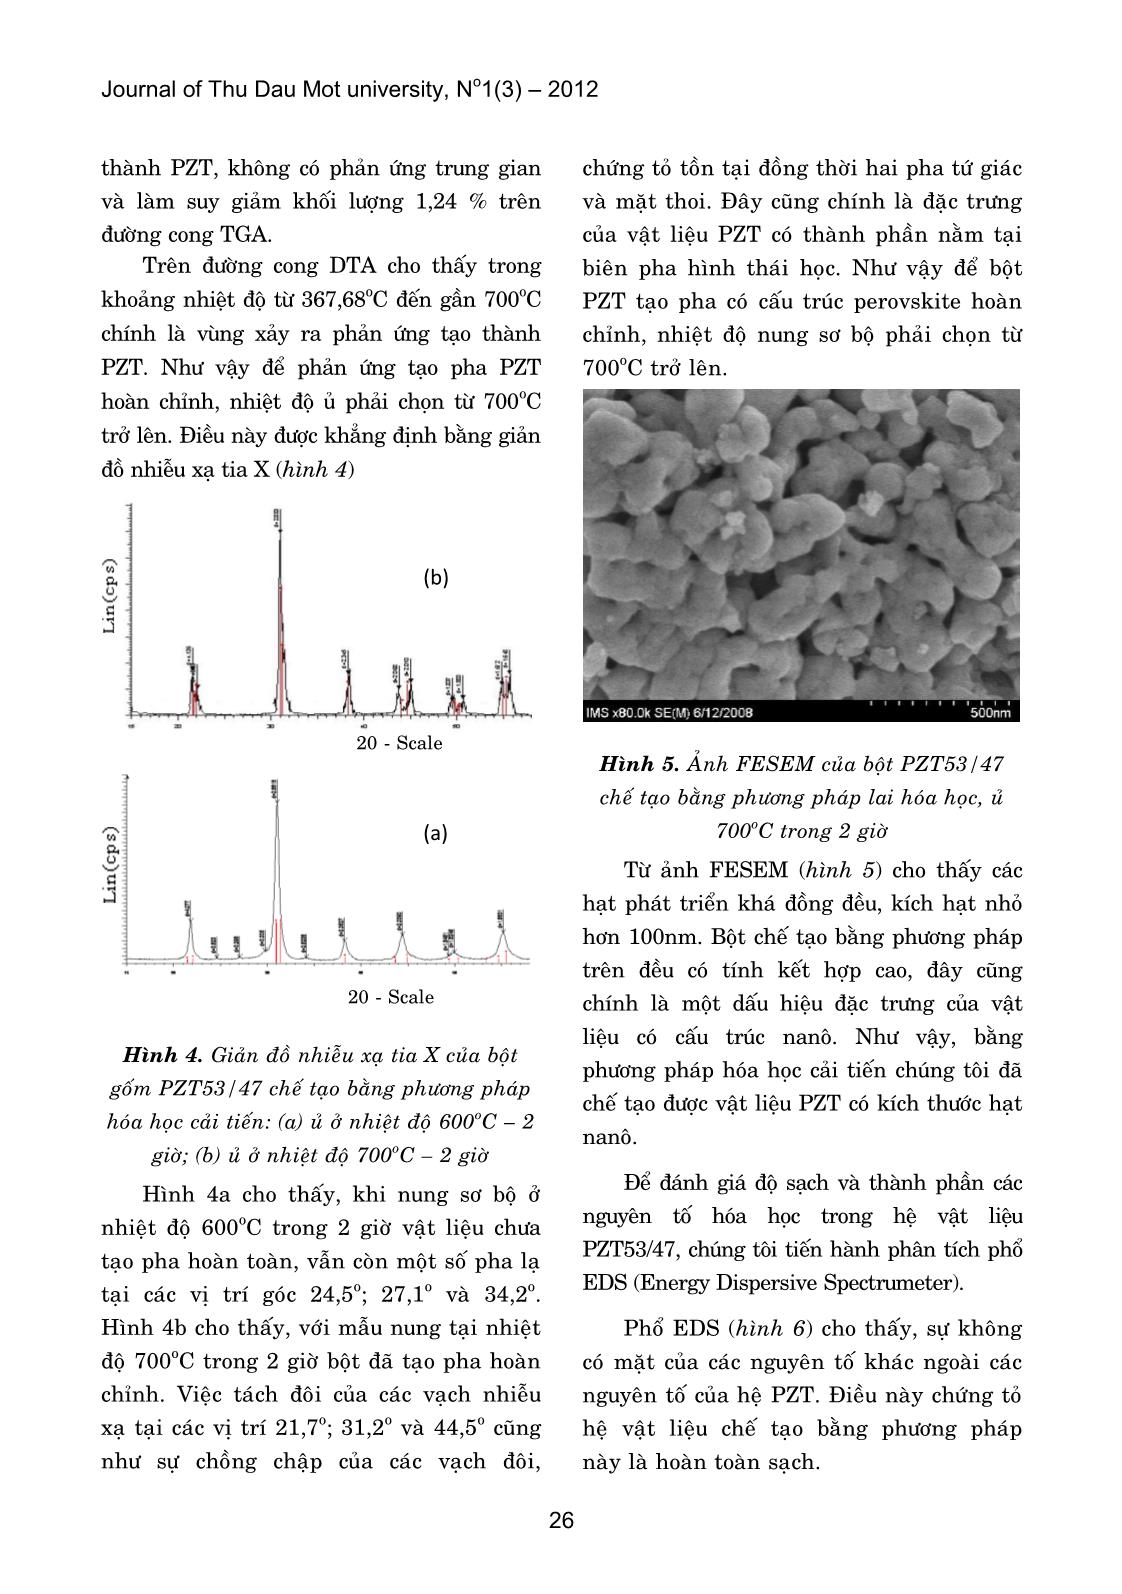 Nghiên cứu và chế tạo gốm sắt điện PZT53/47 bằng phương pháp hóa học cải tiến trang 4